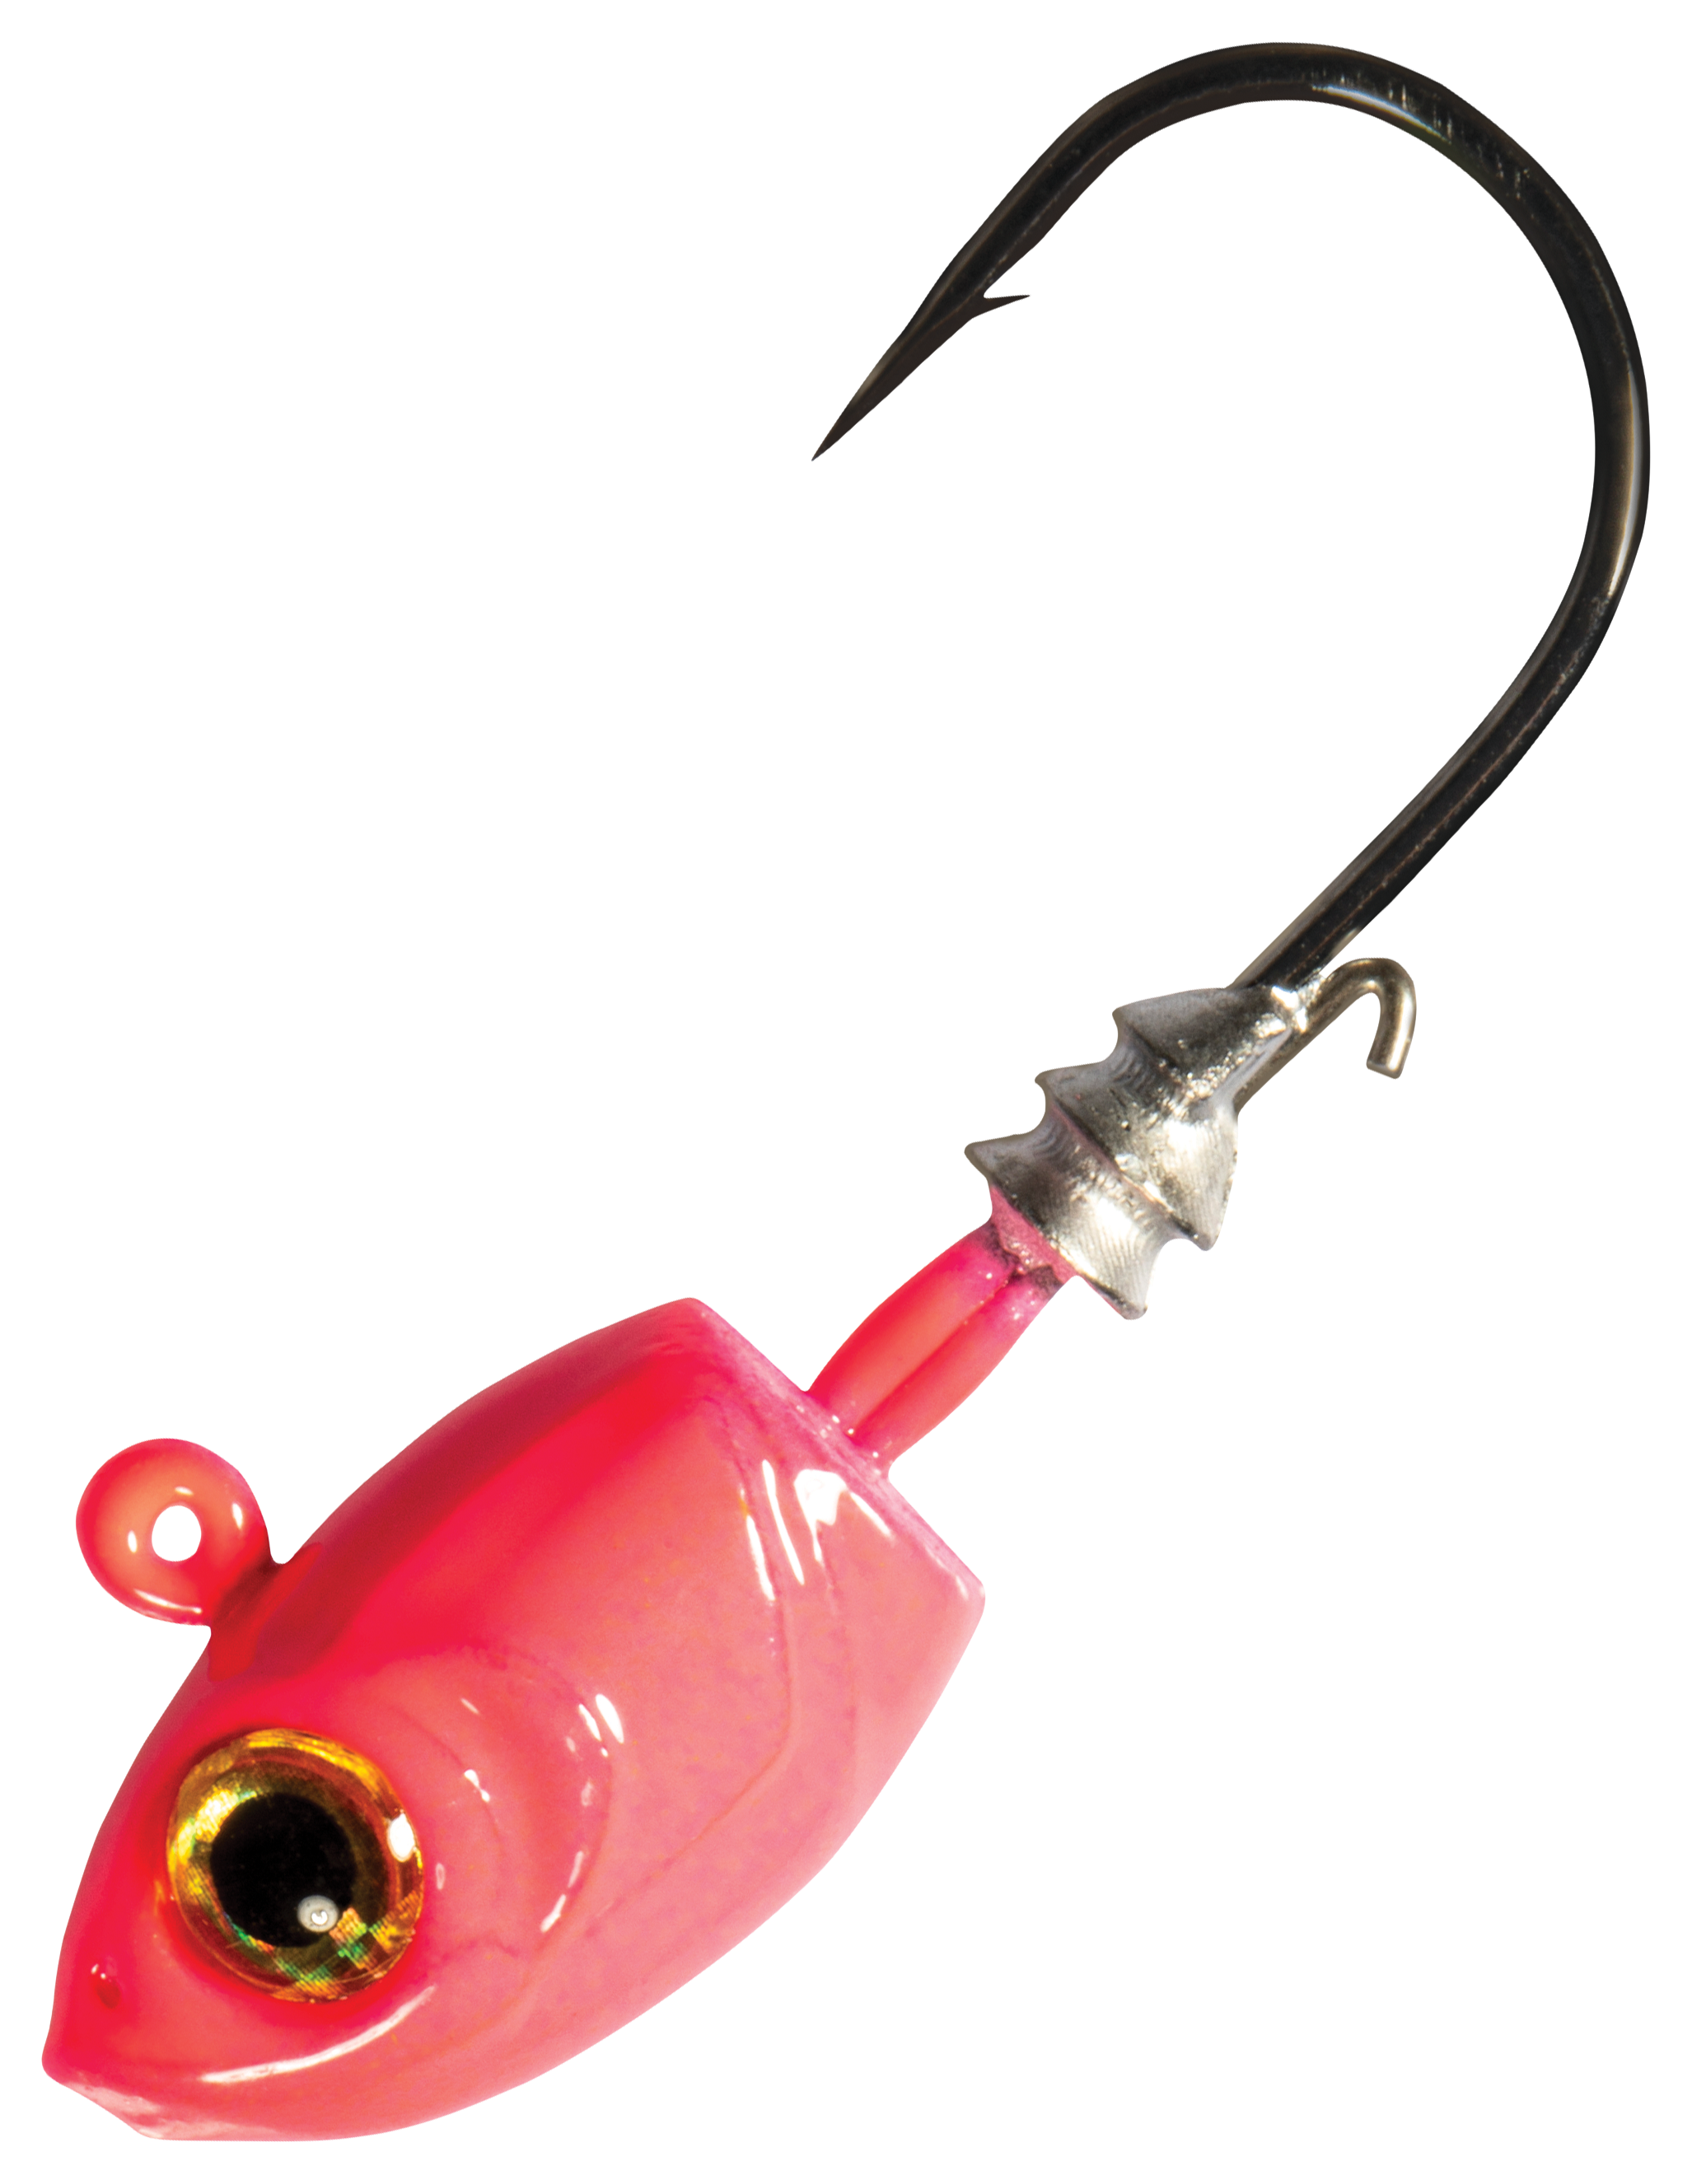 Z-Man Micro Shad Headz - 1/16 oz - Pink Glow